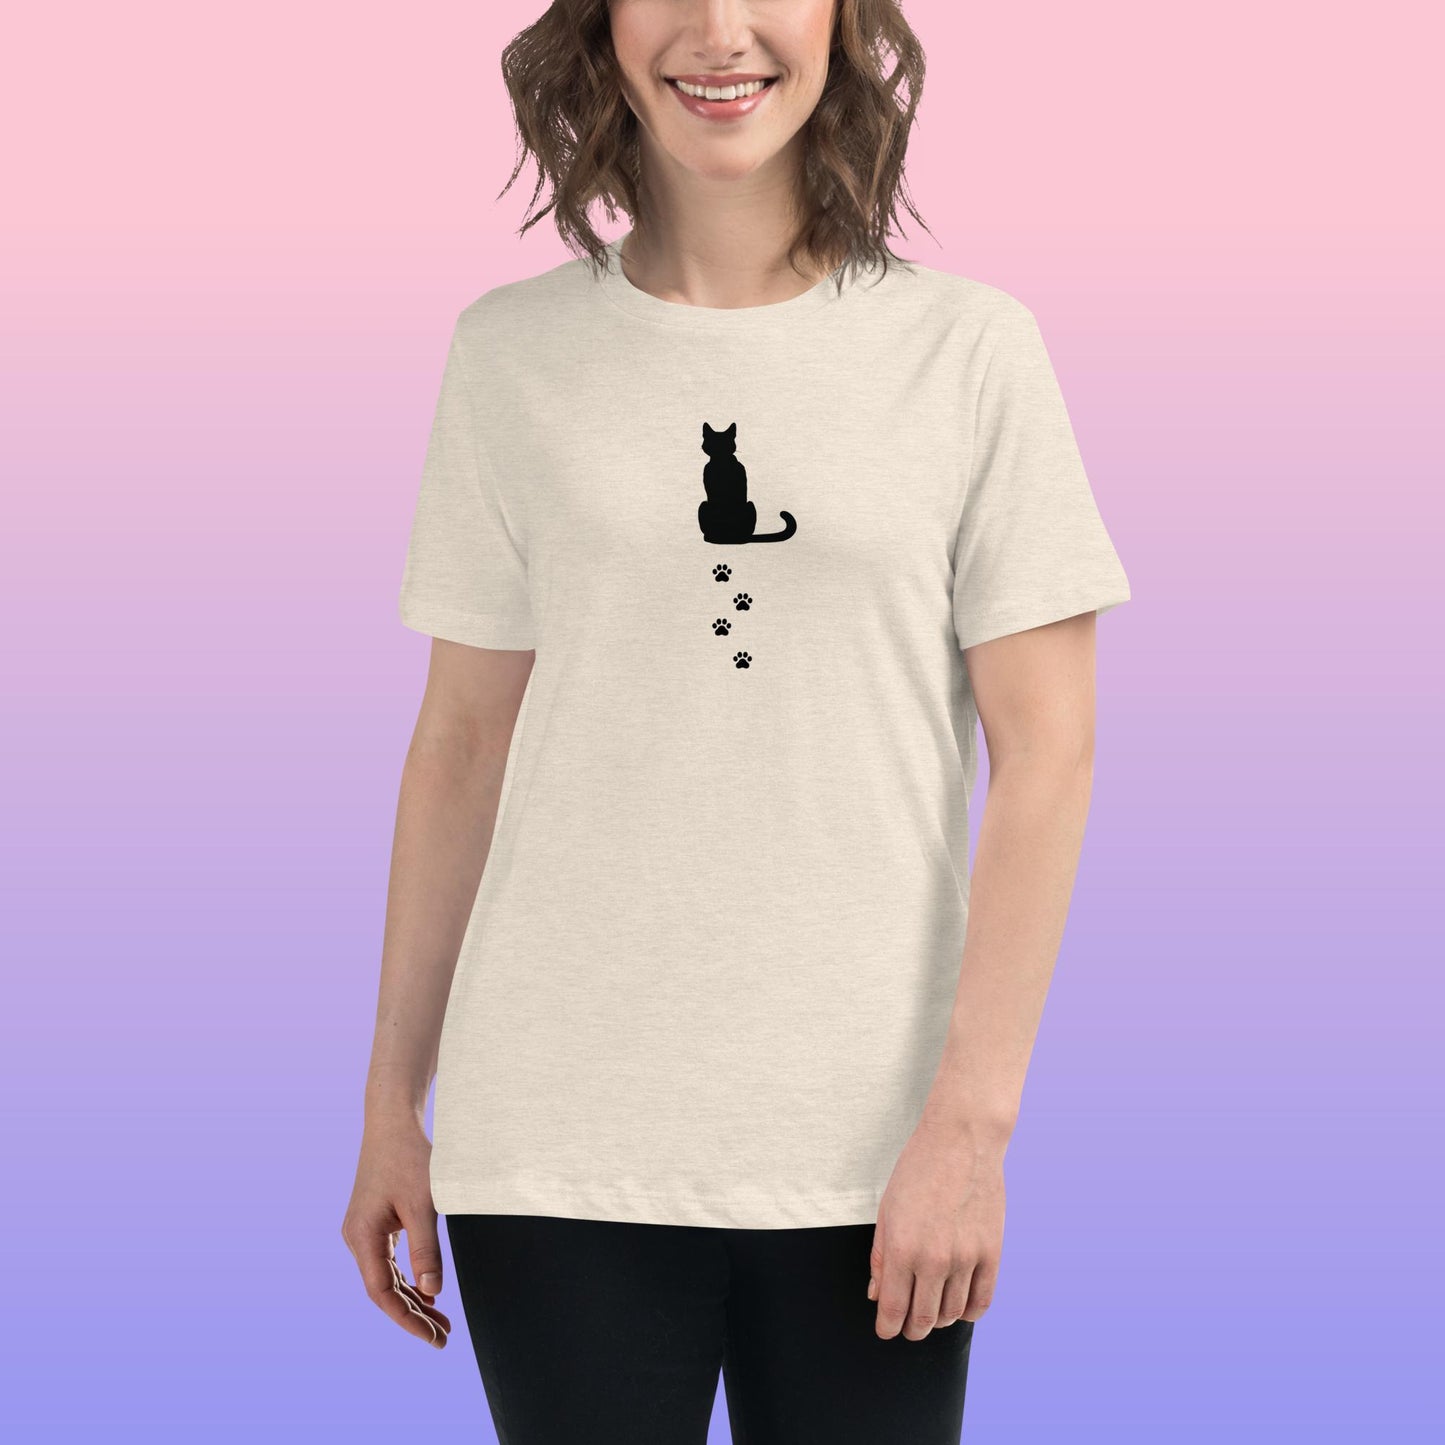 Alley Cat T-Shirt